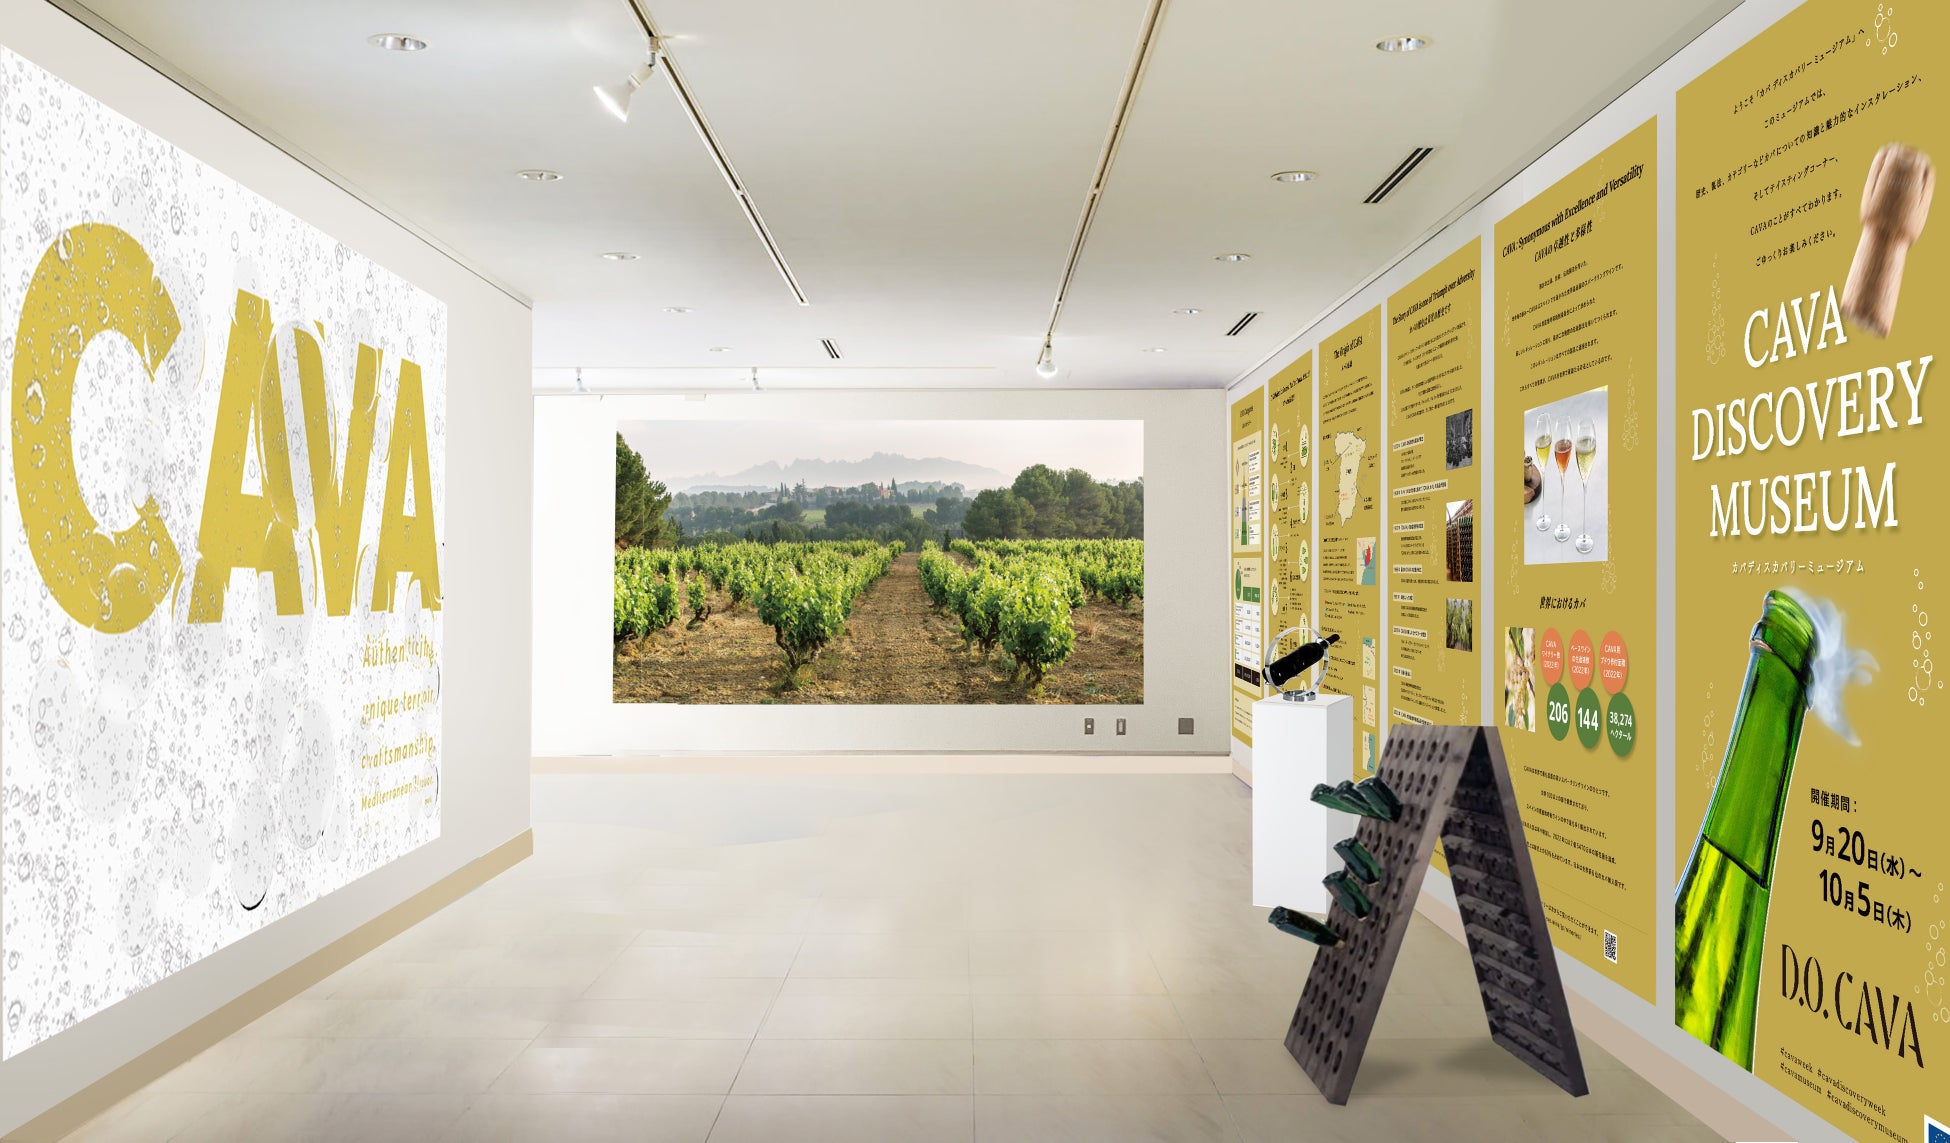 スペイン産スパークリングワインCAVAの伝統と歴史を学び世界観を体験できるCAVA初の展覧会「CAVA DISCOVERY MUSEUM」開催